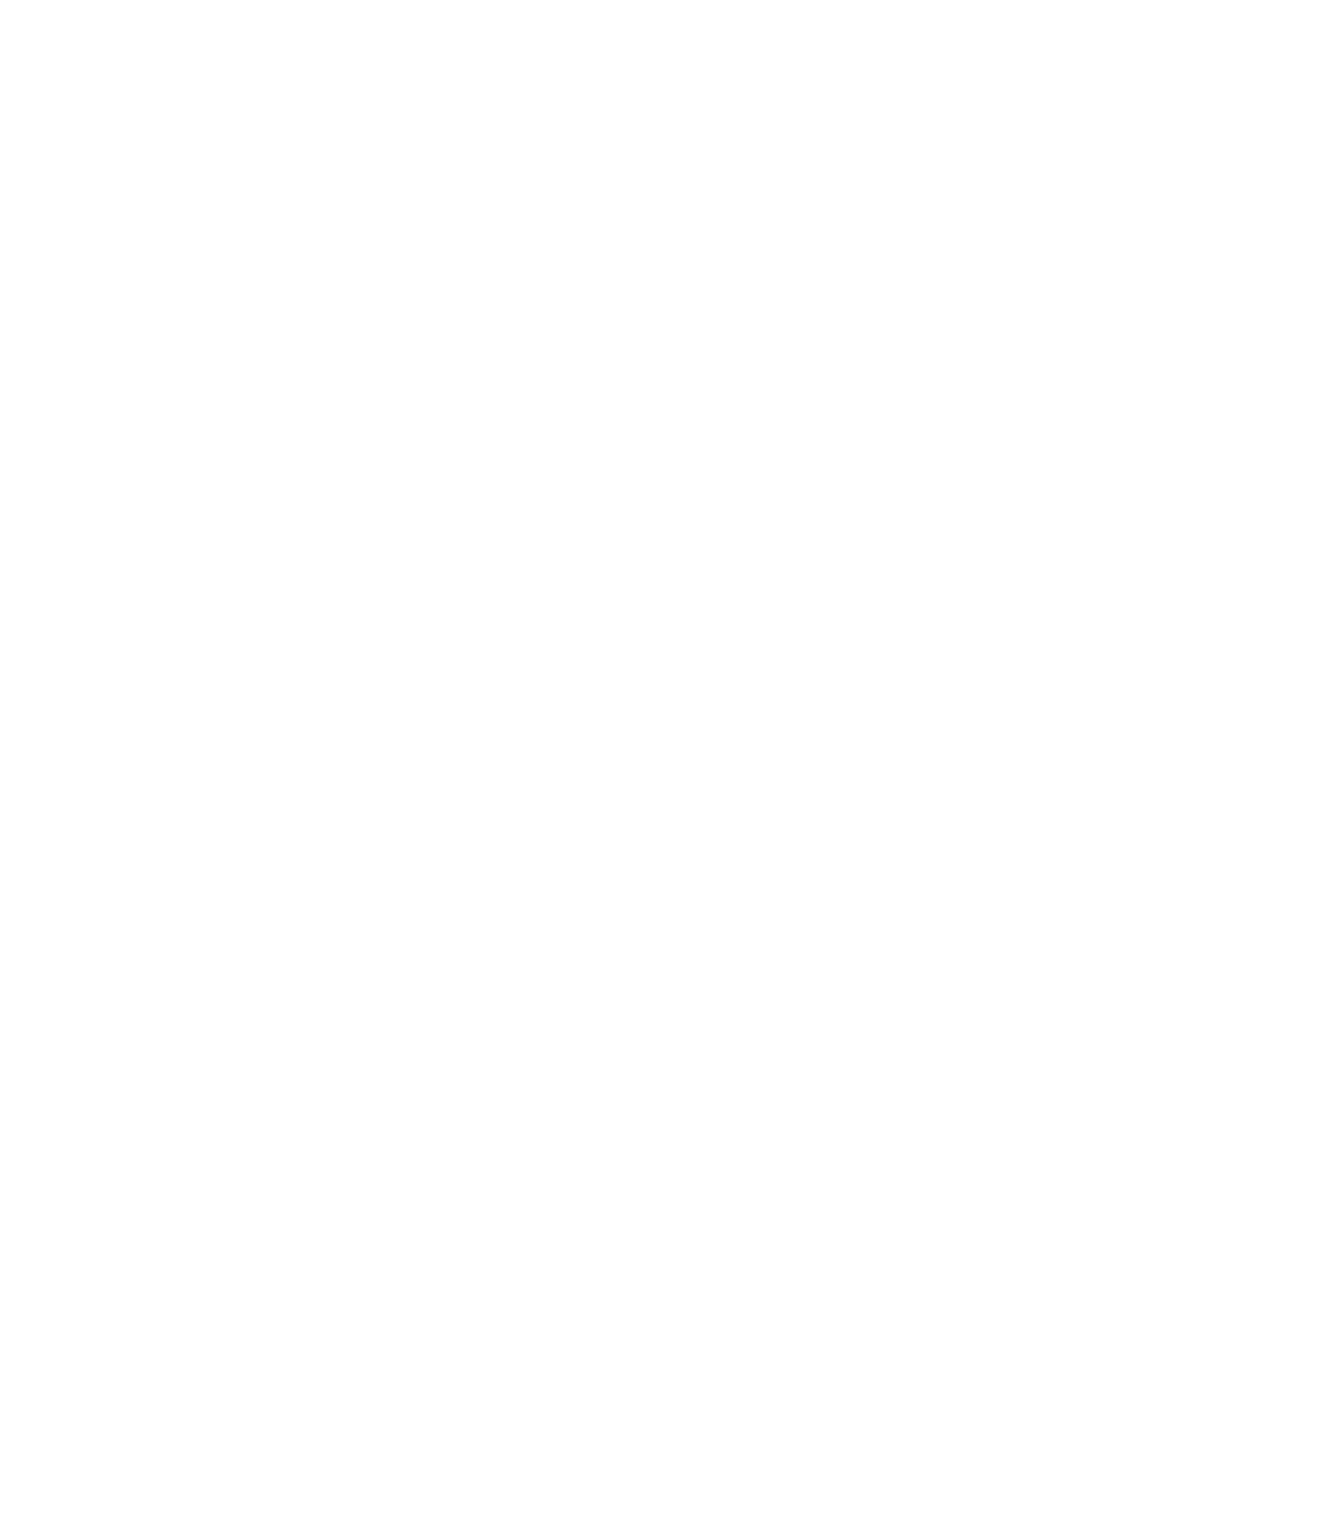 Alliance Resource Partners logo pour fonds sombres (PNG transparent)